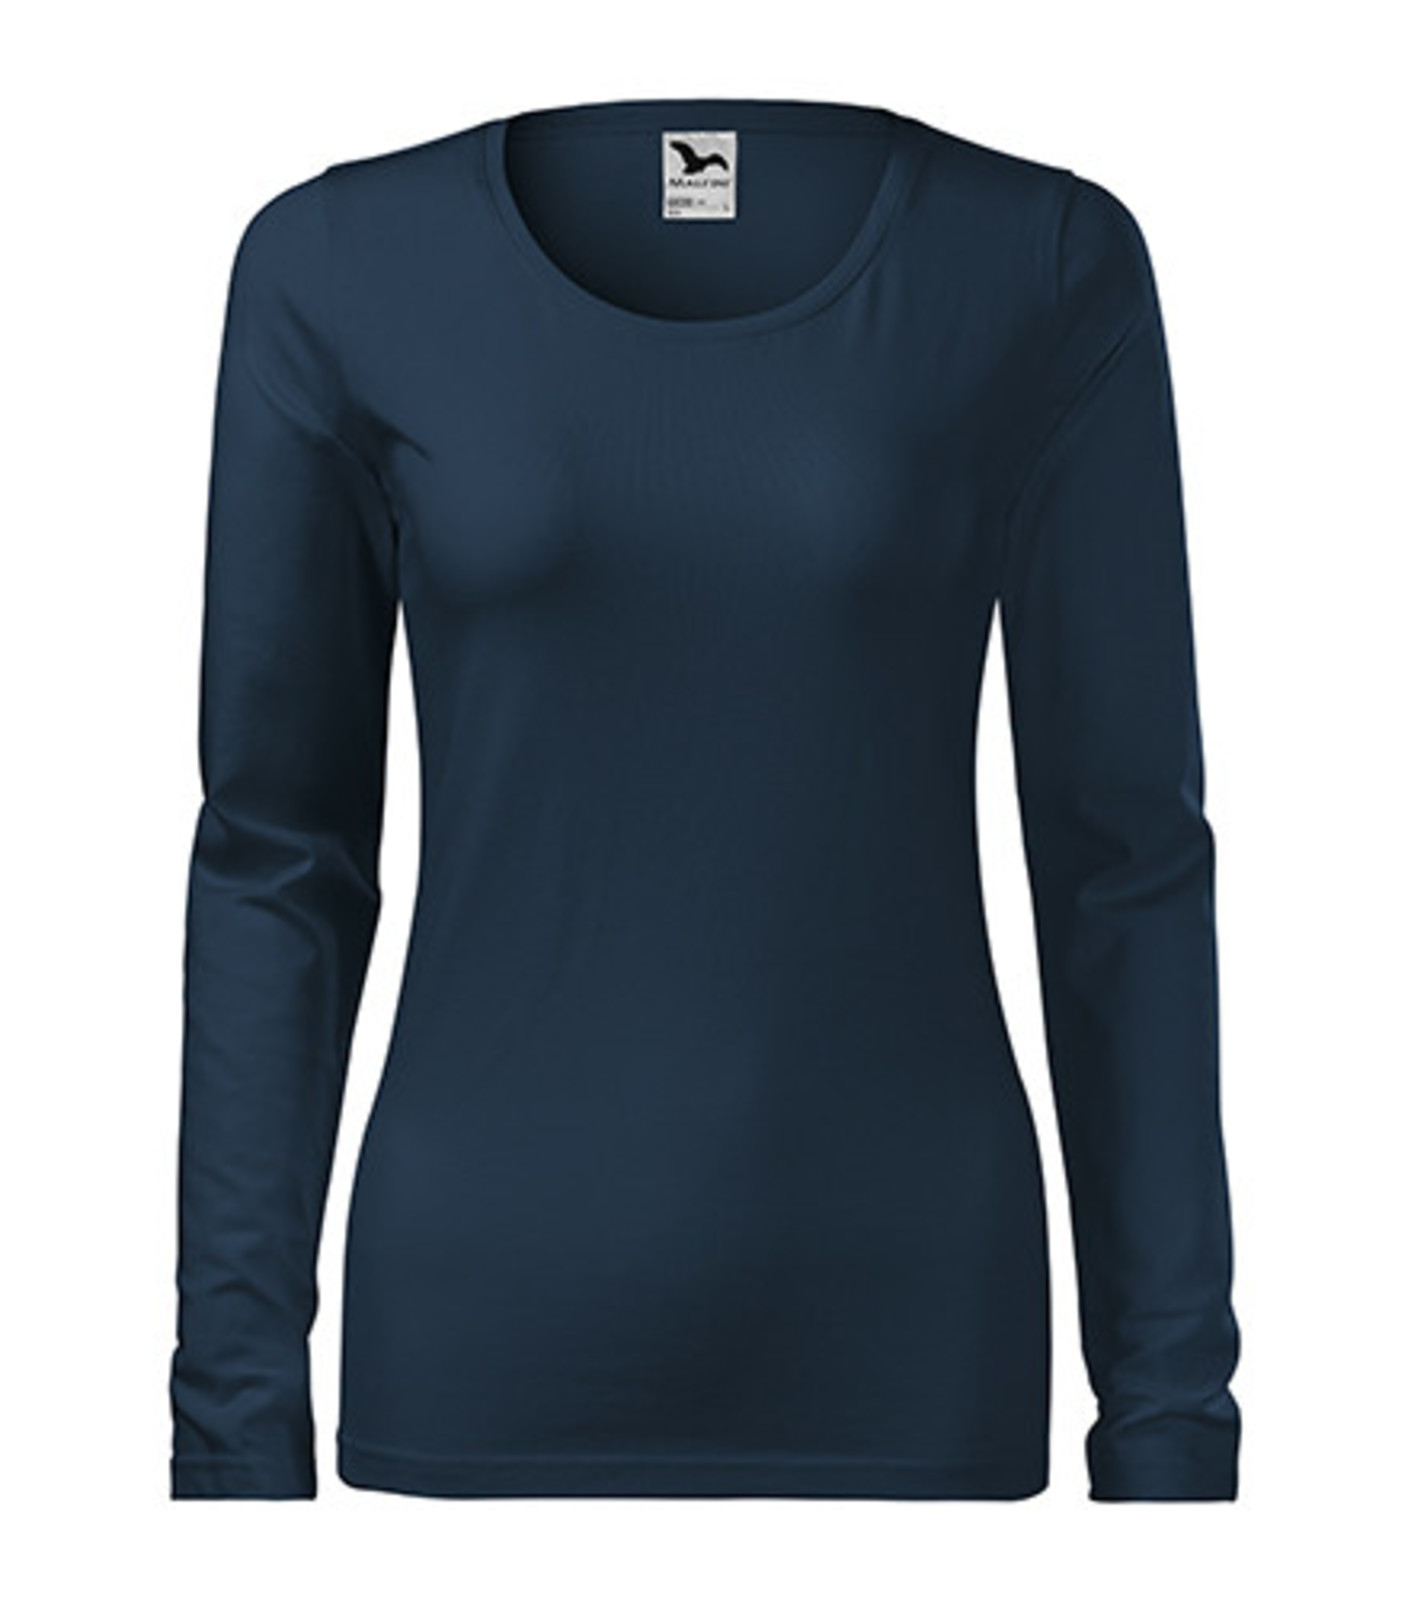 Dámske tričko s dlhým rukávom Adler Slim 139 - veľkosť: XL, farba: tmavo modrá